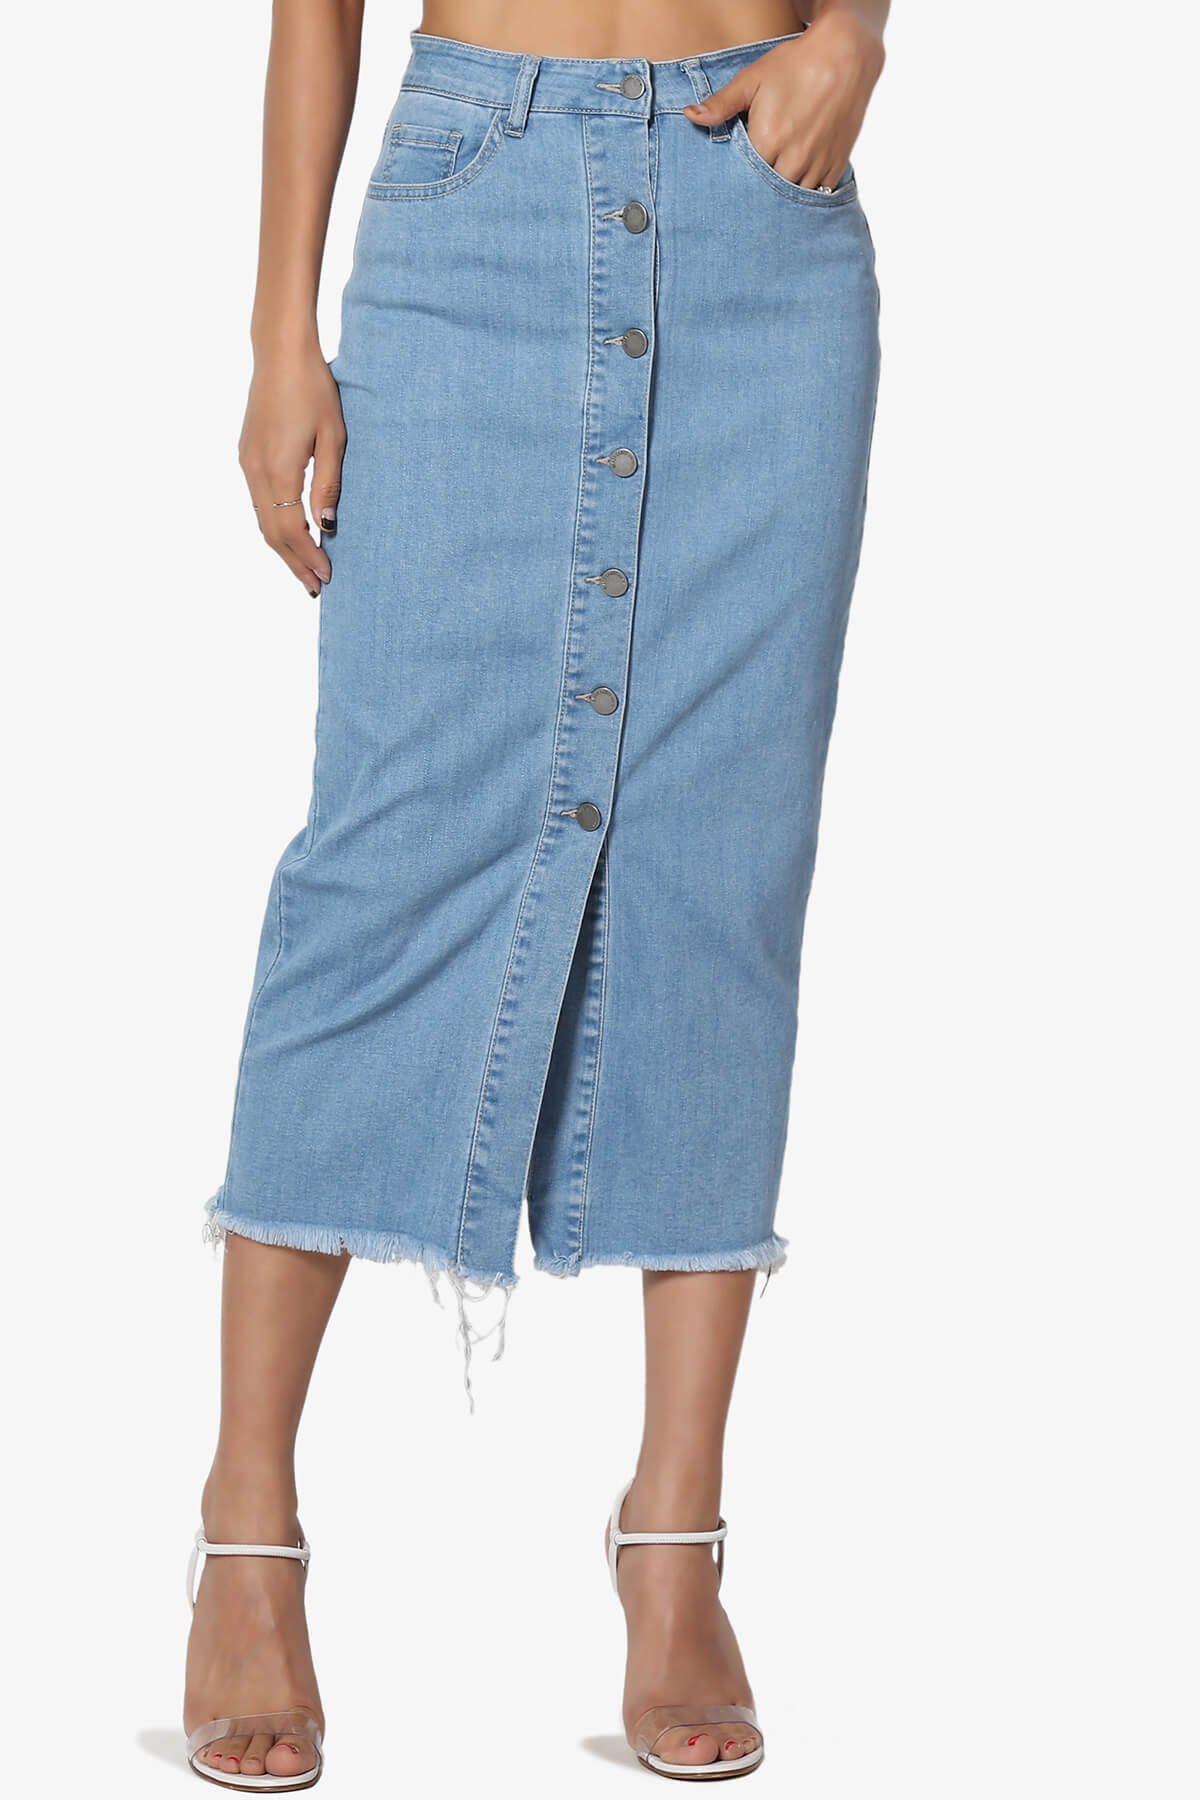 High Waist Button Front Slit Below Knee Mid Calf Denim Pencil Skirt –  TheMogan